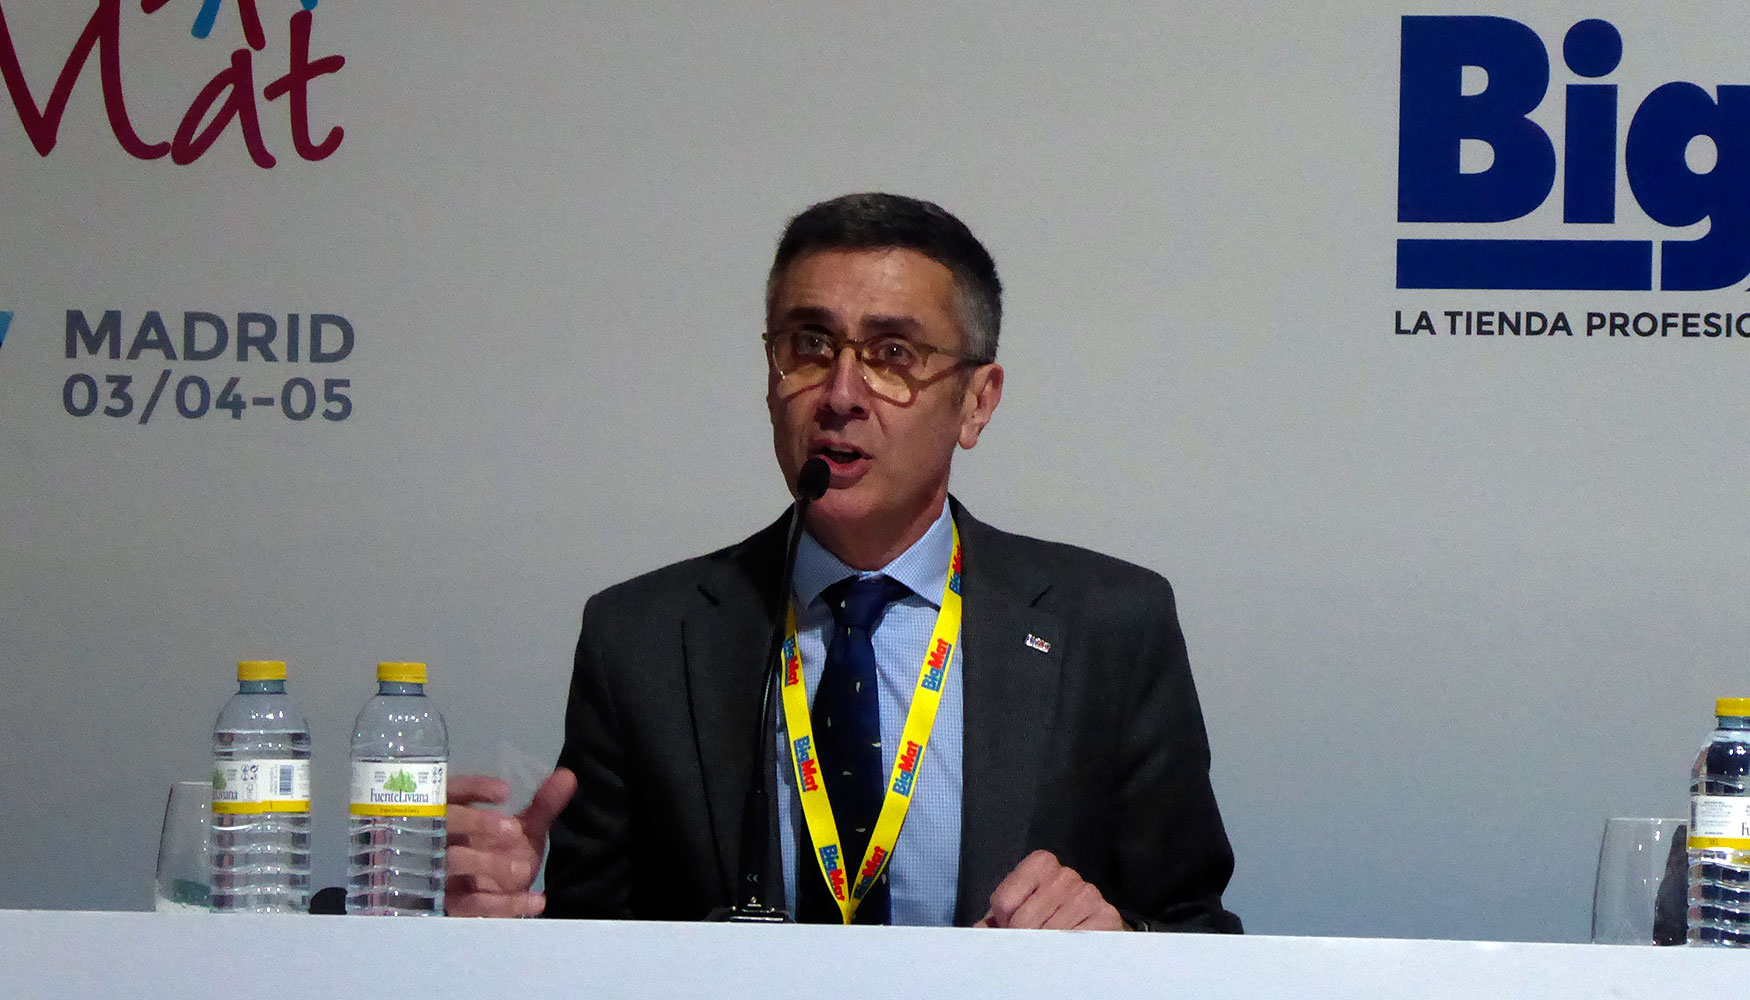 Pedro Vias, presidente de BigMat